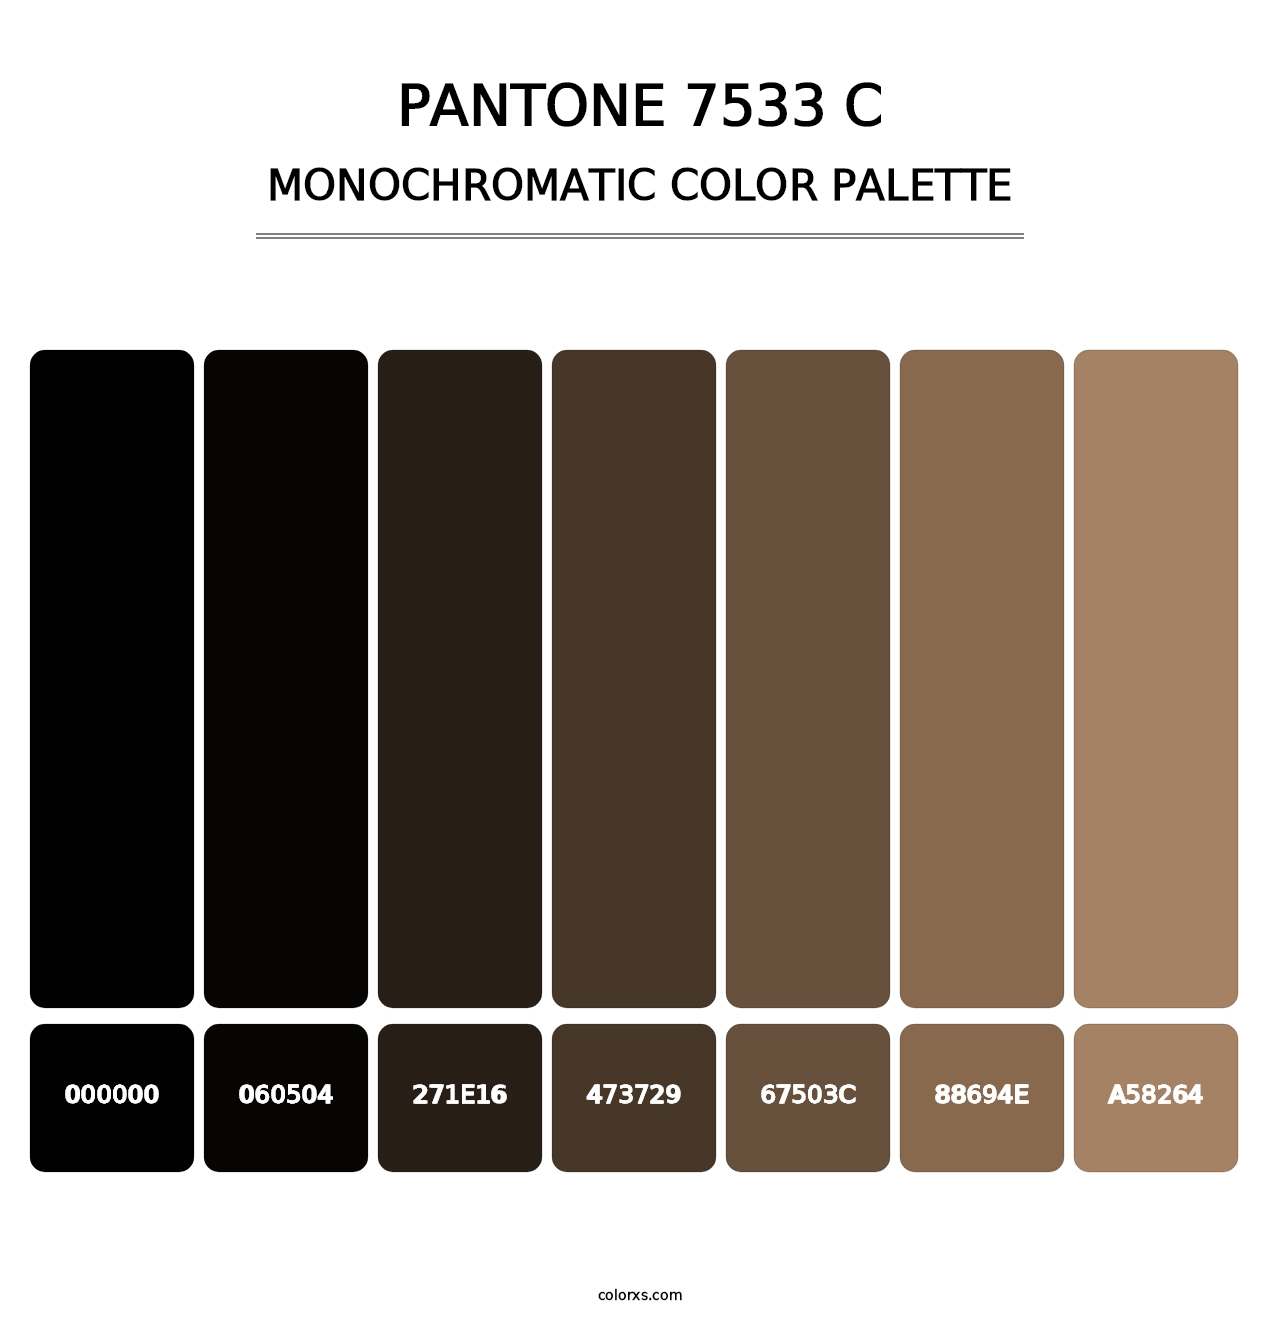 PANTONE 7533 C - Monochromatic Color Palette